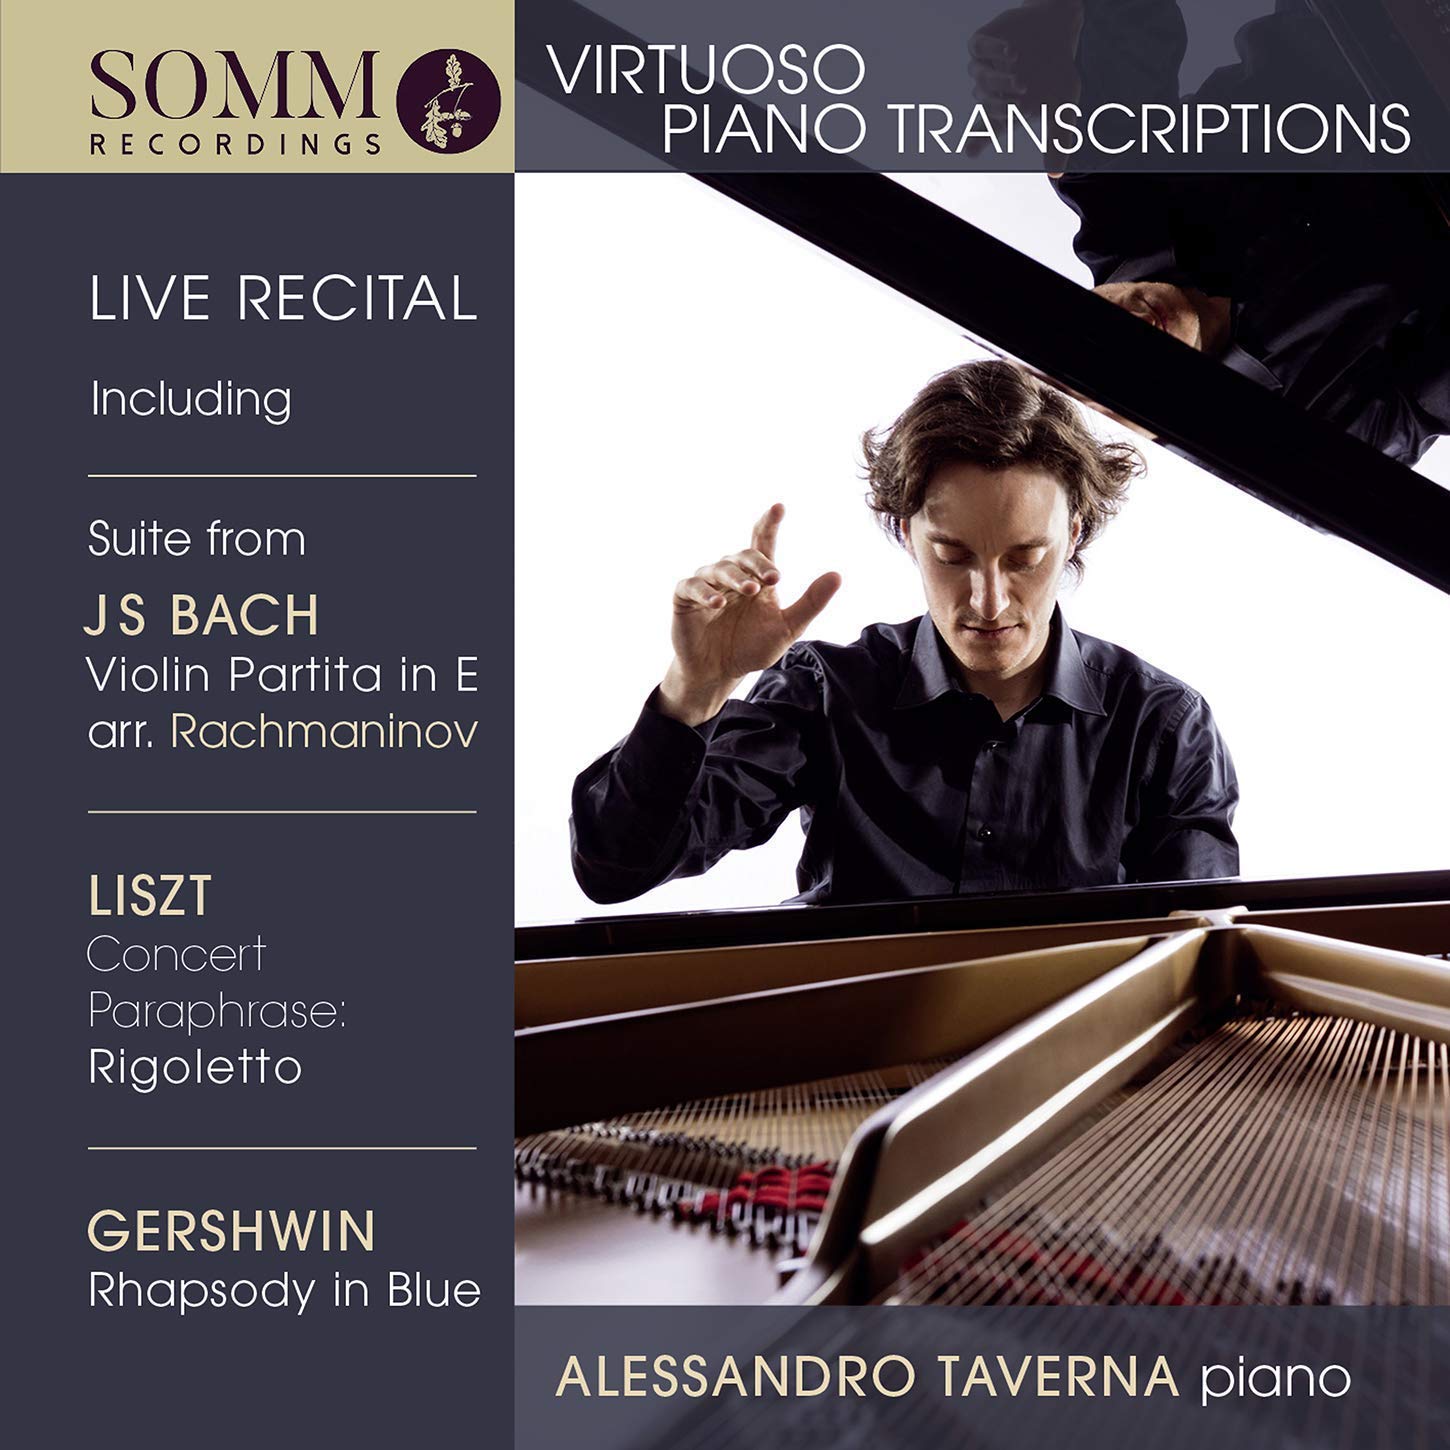 SOMMCD0605.  Virtuoso Piano Transcriptions (Alessandro Taverna)